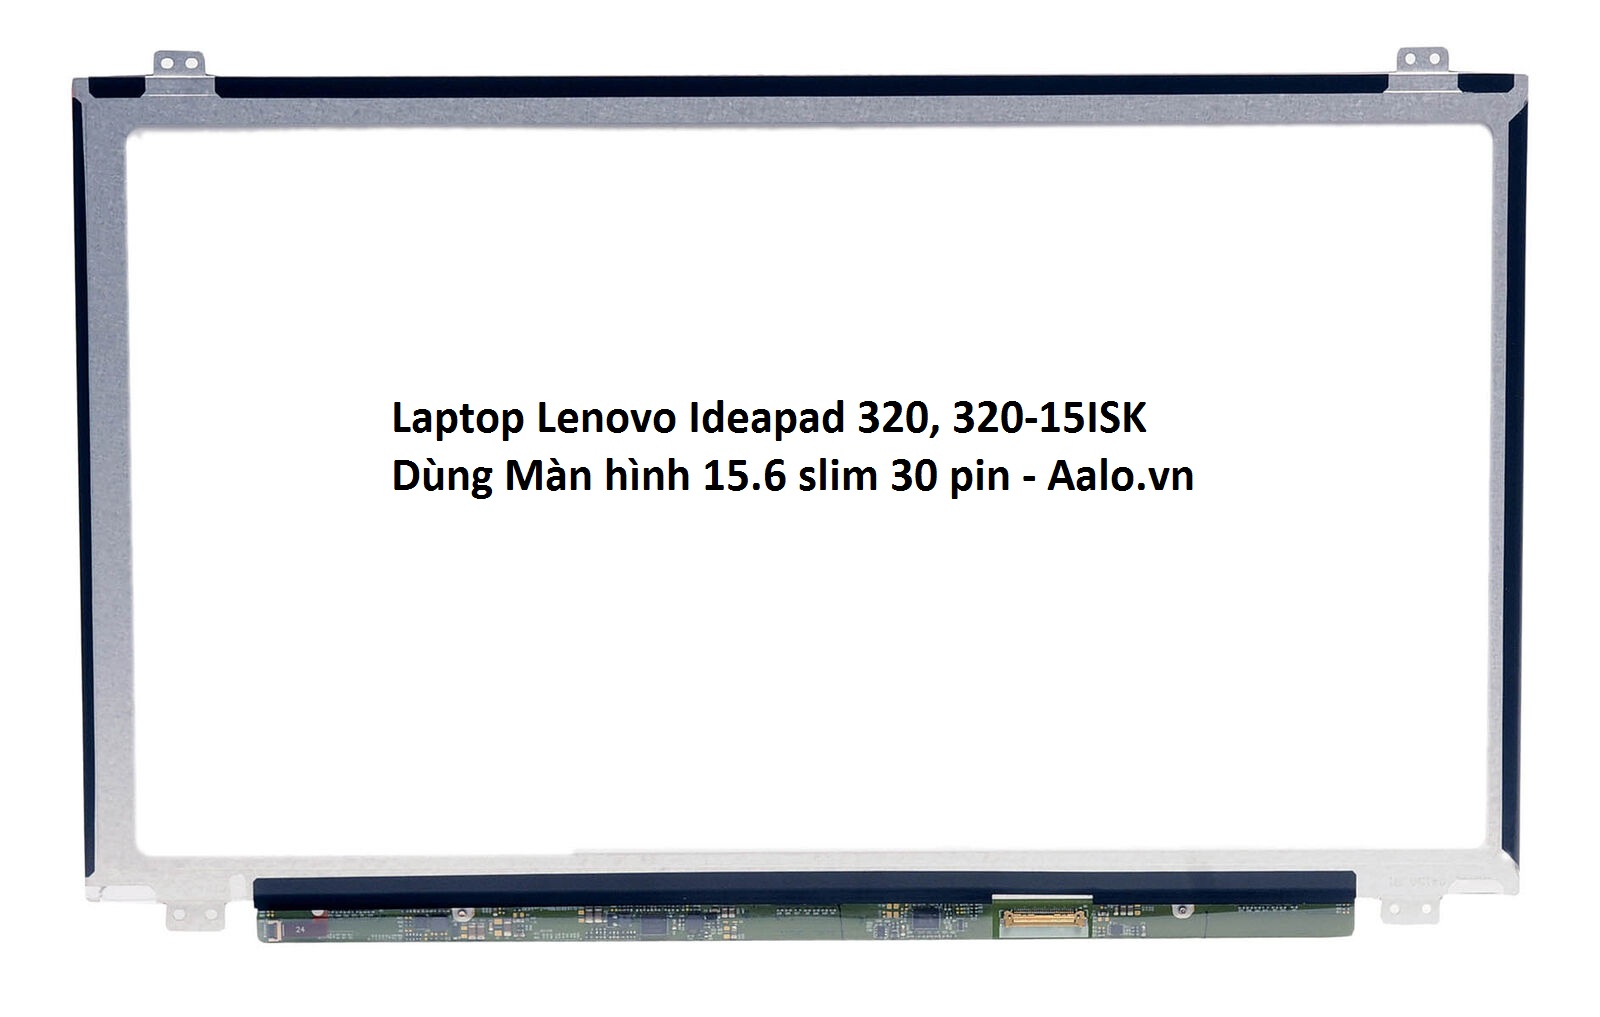 Màn hình Laptop Lenovo Ideapad 320 320-15ISK - Aalo.vn